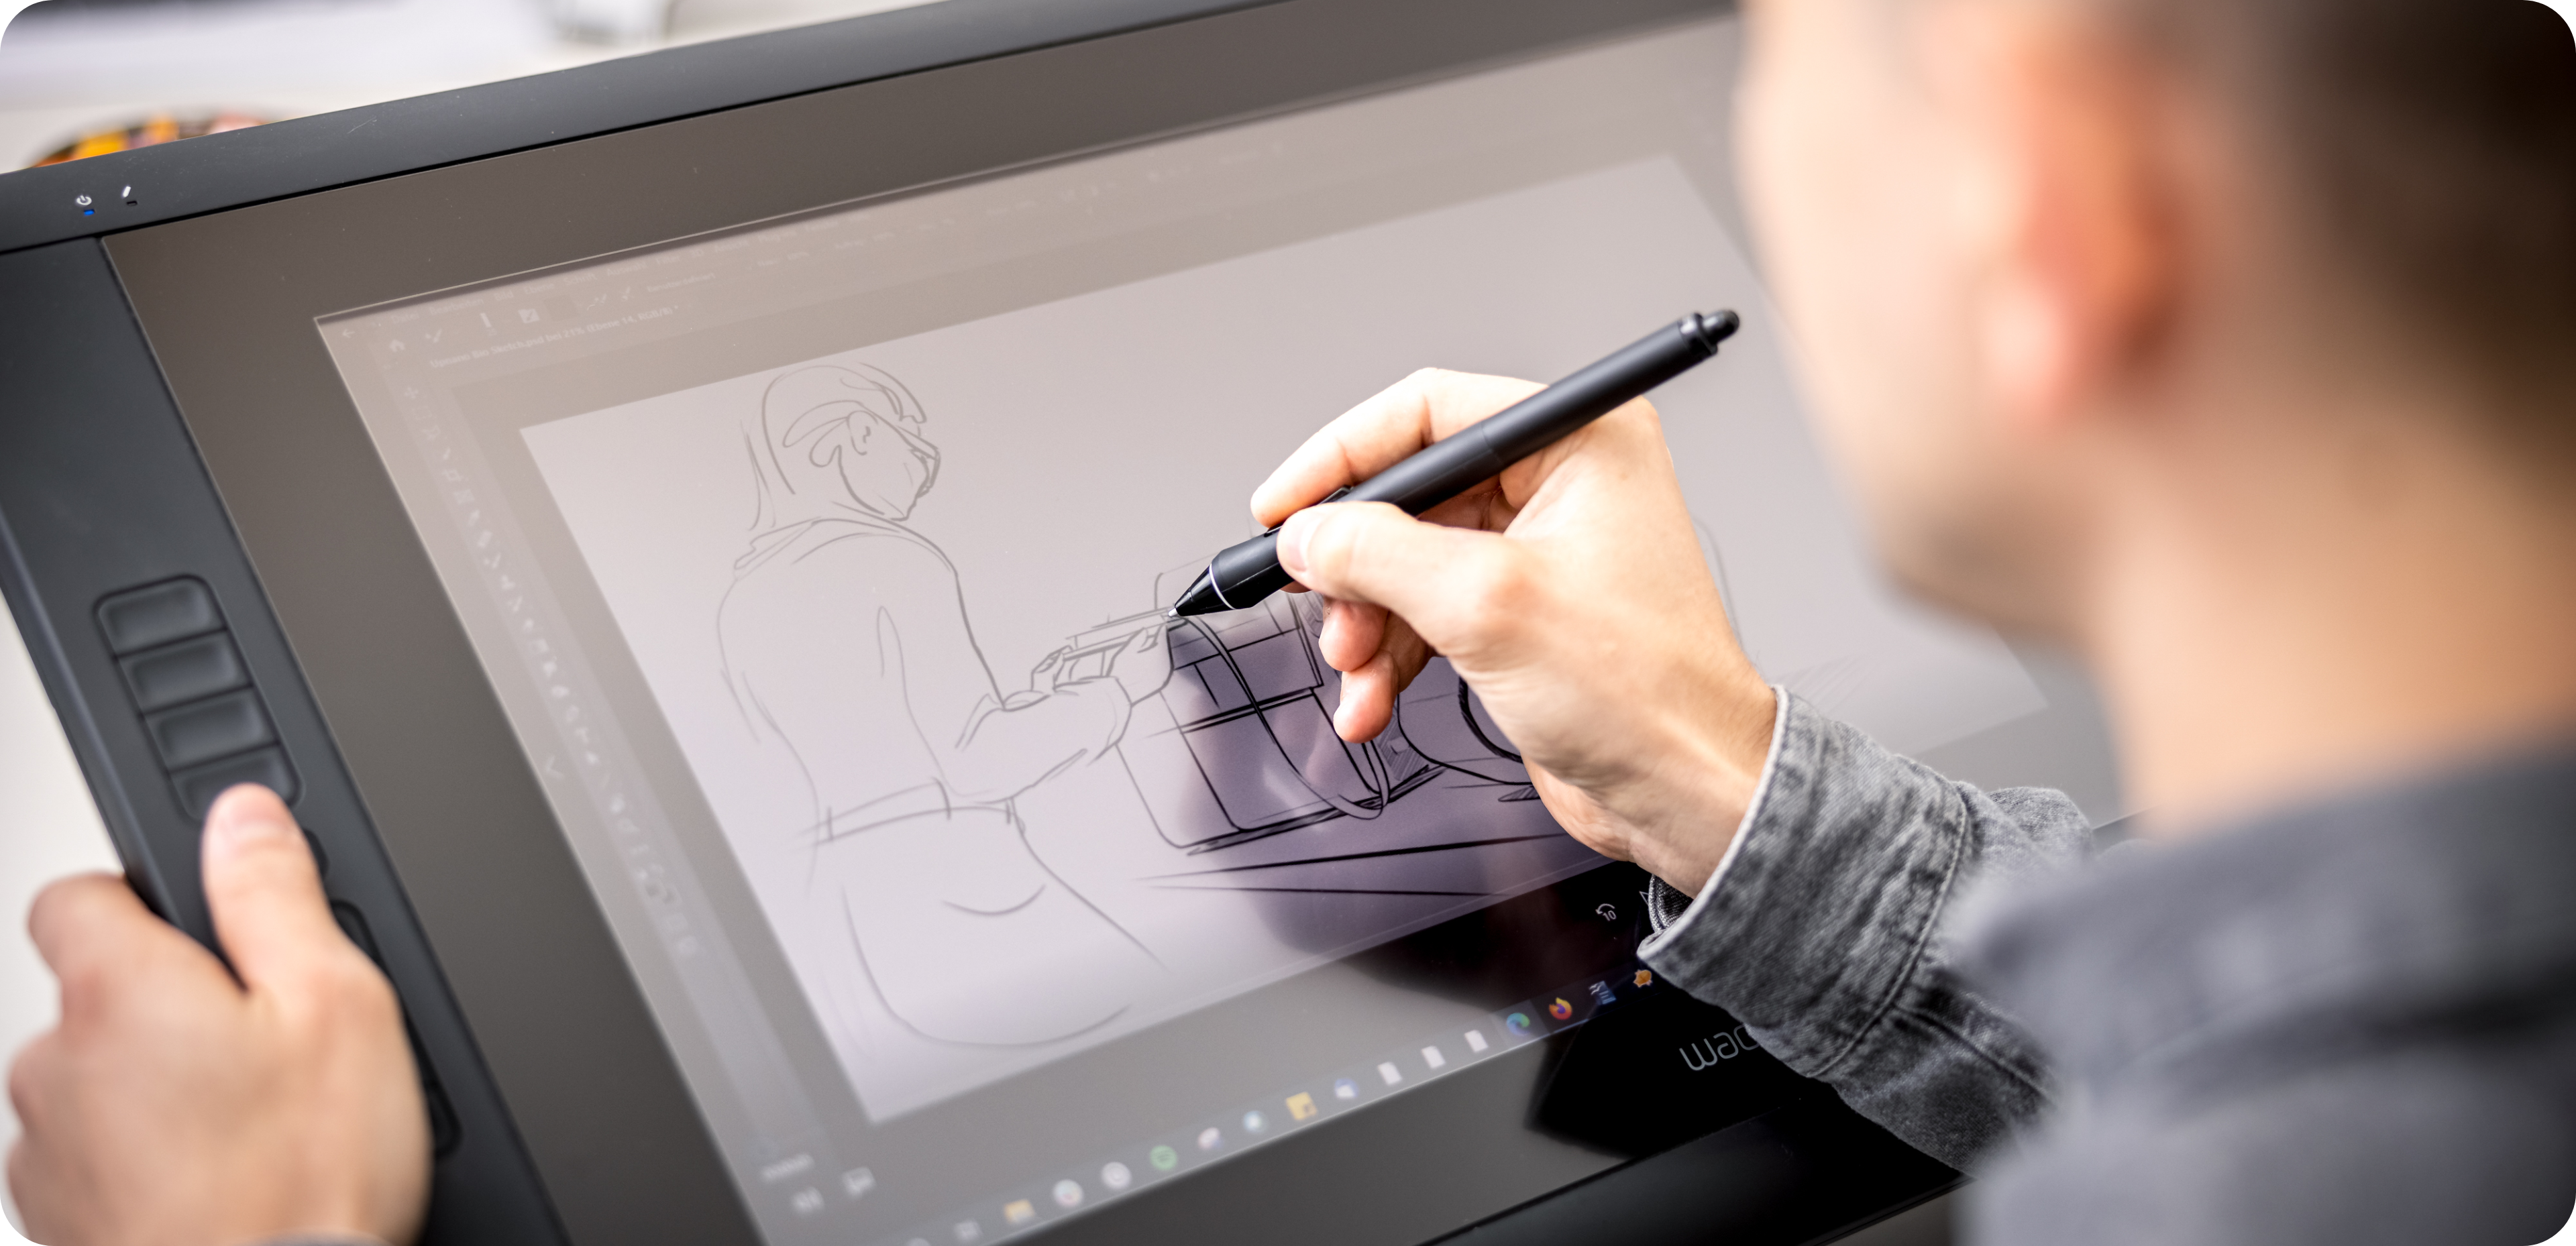 Michael designt auf einem Wacom Tablet | Industriedesign Produktdesign Wien